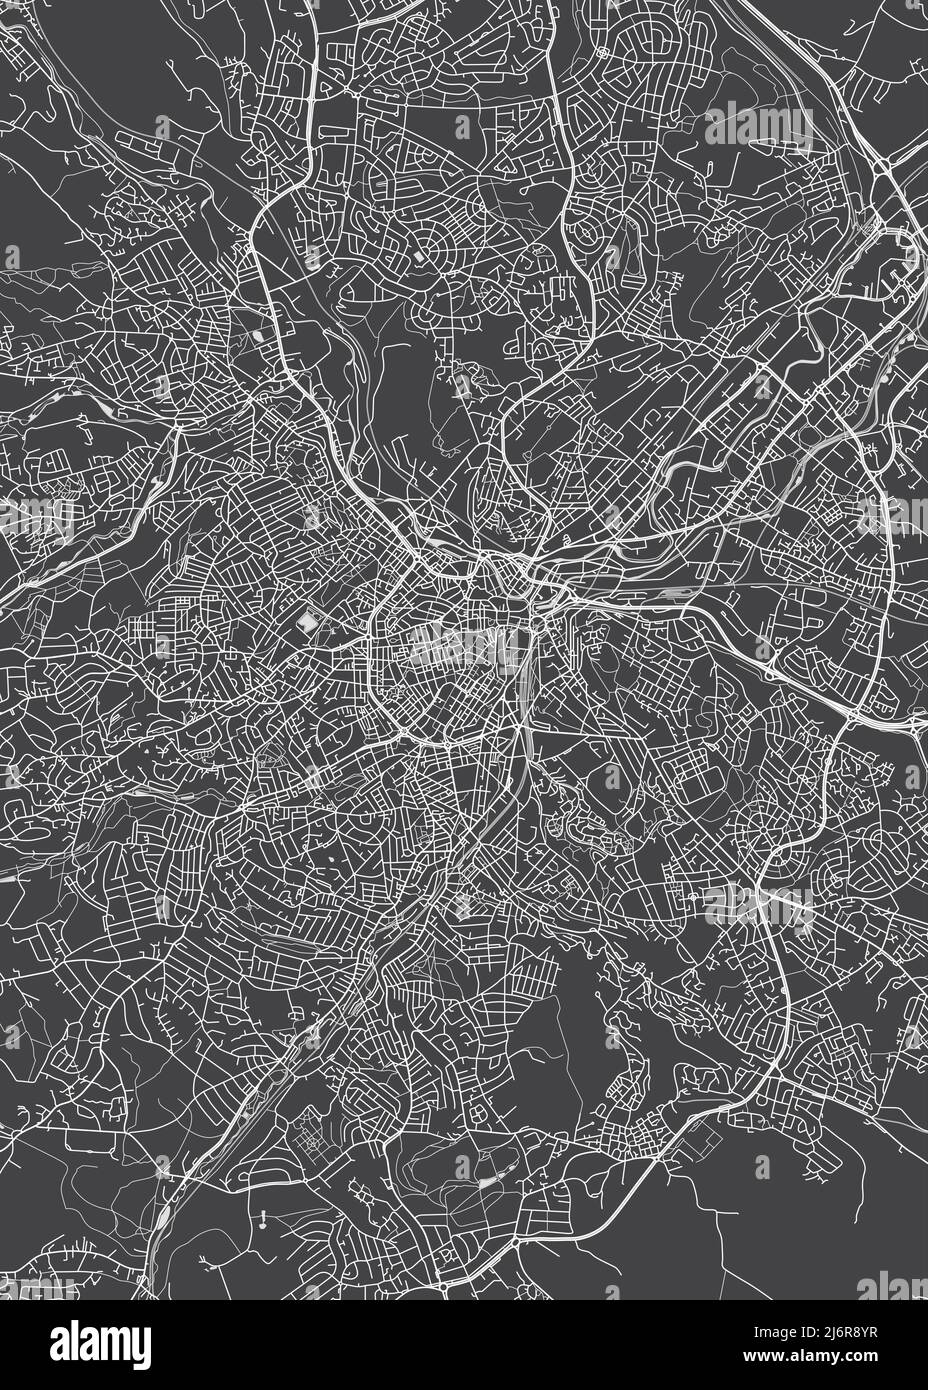 Stadtplan Sheffield, monochromer Detailplan, Vektorgrafik Stock Vektor